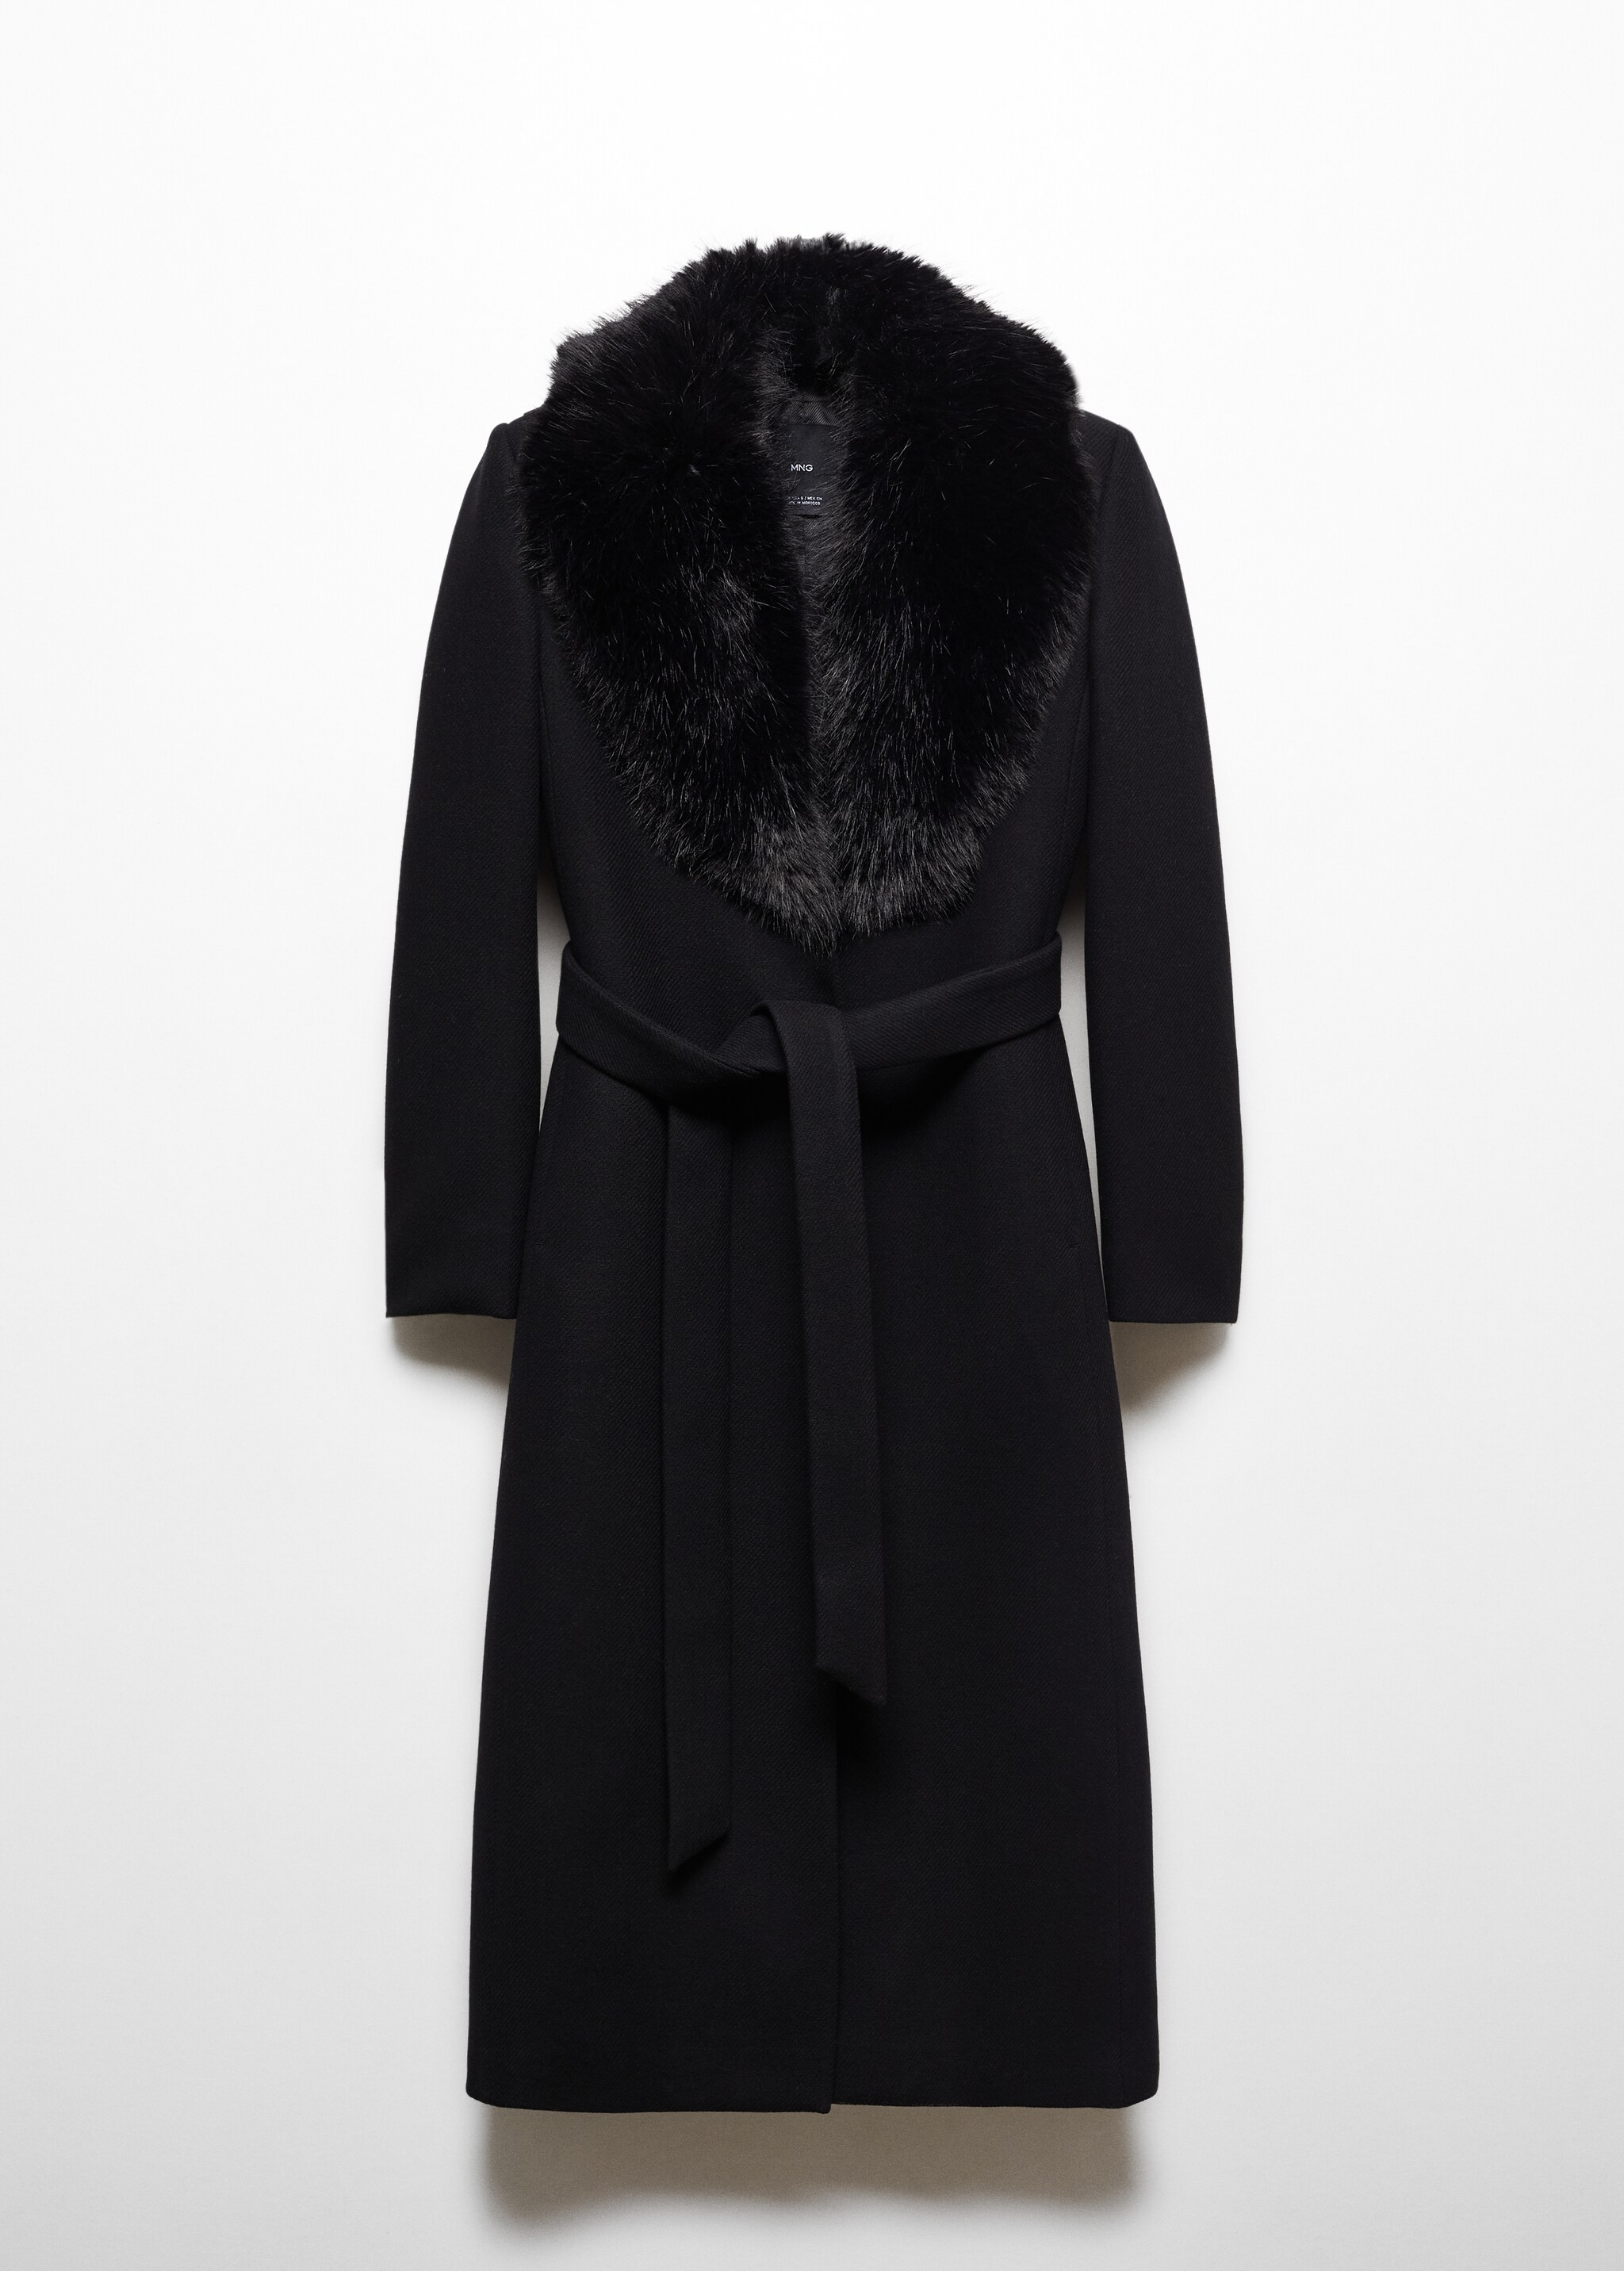 Cappotto lana Manteco pelliccia staccabile - Articolo senza modello